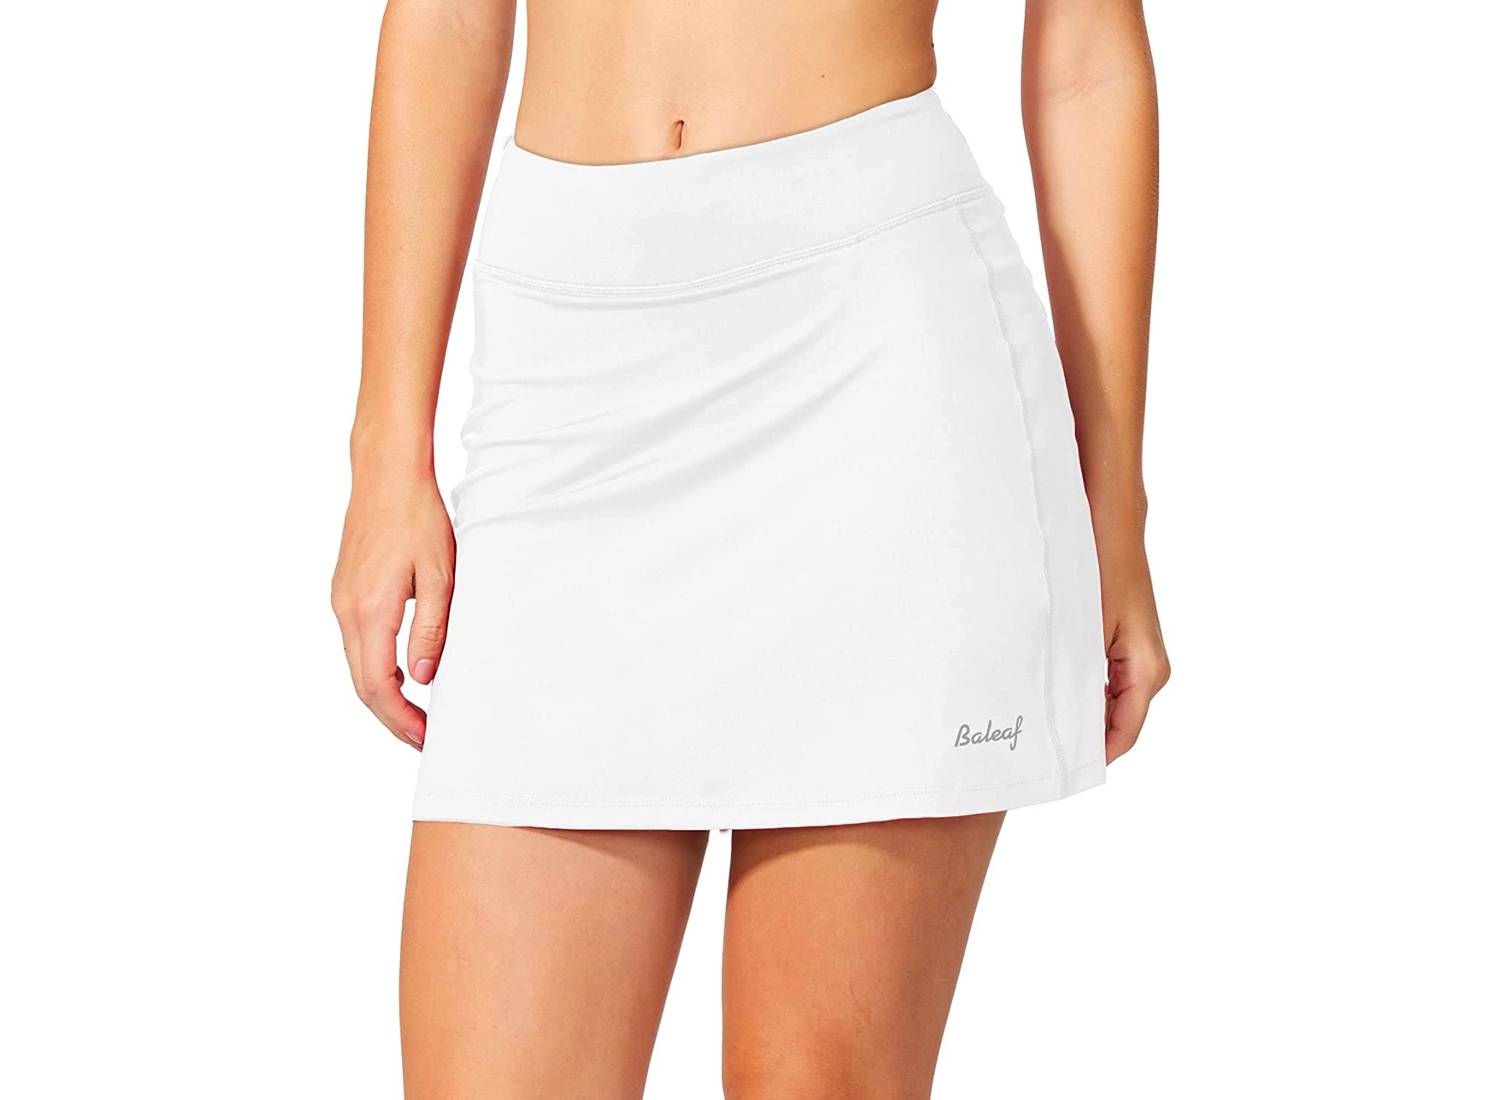 Wanita mengenakan rok tenis putih